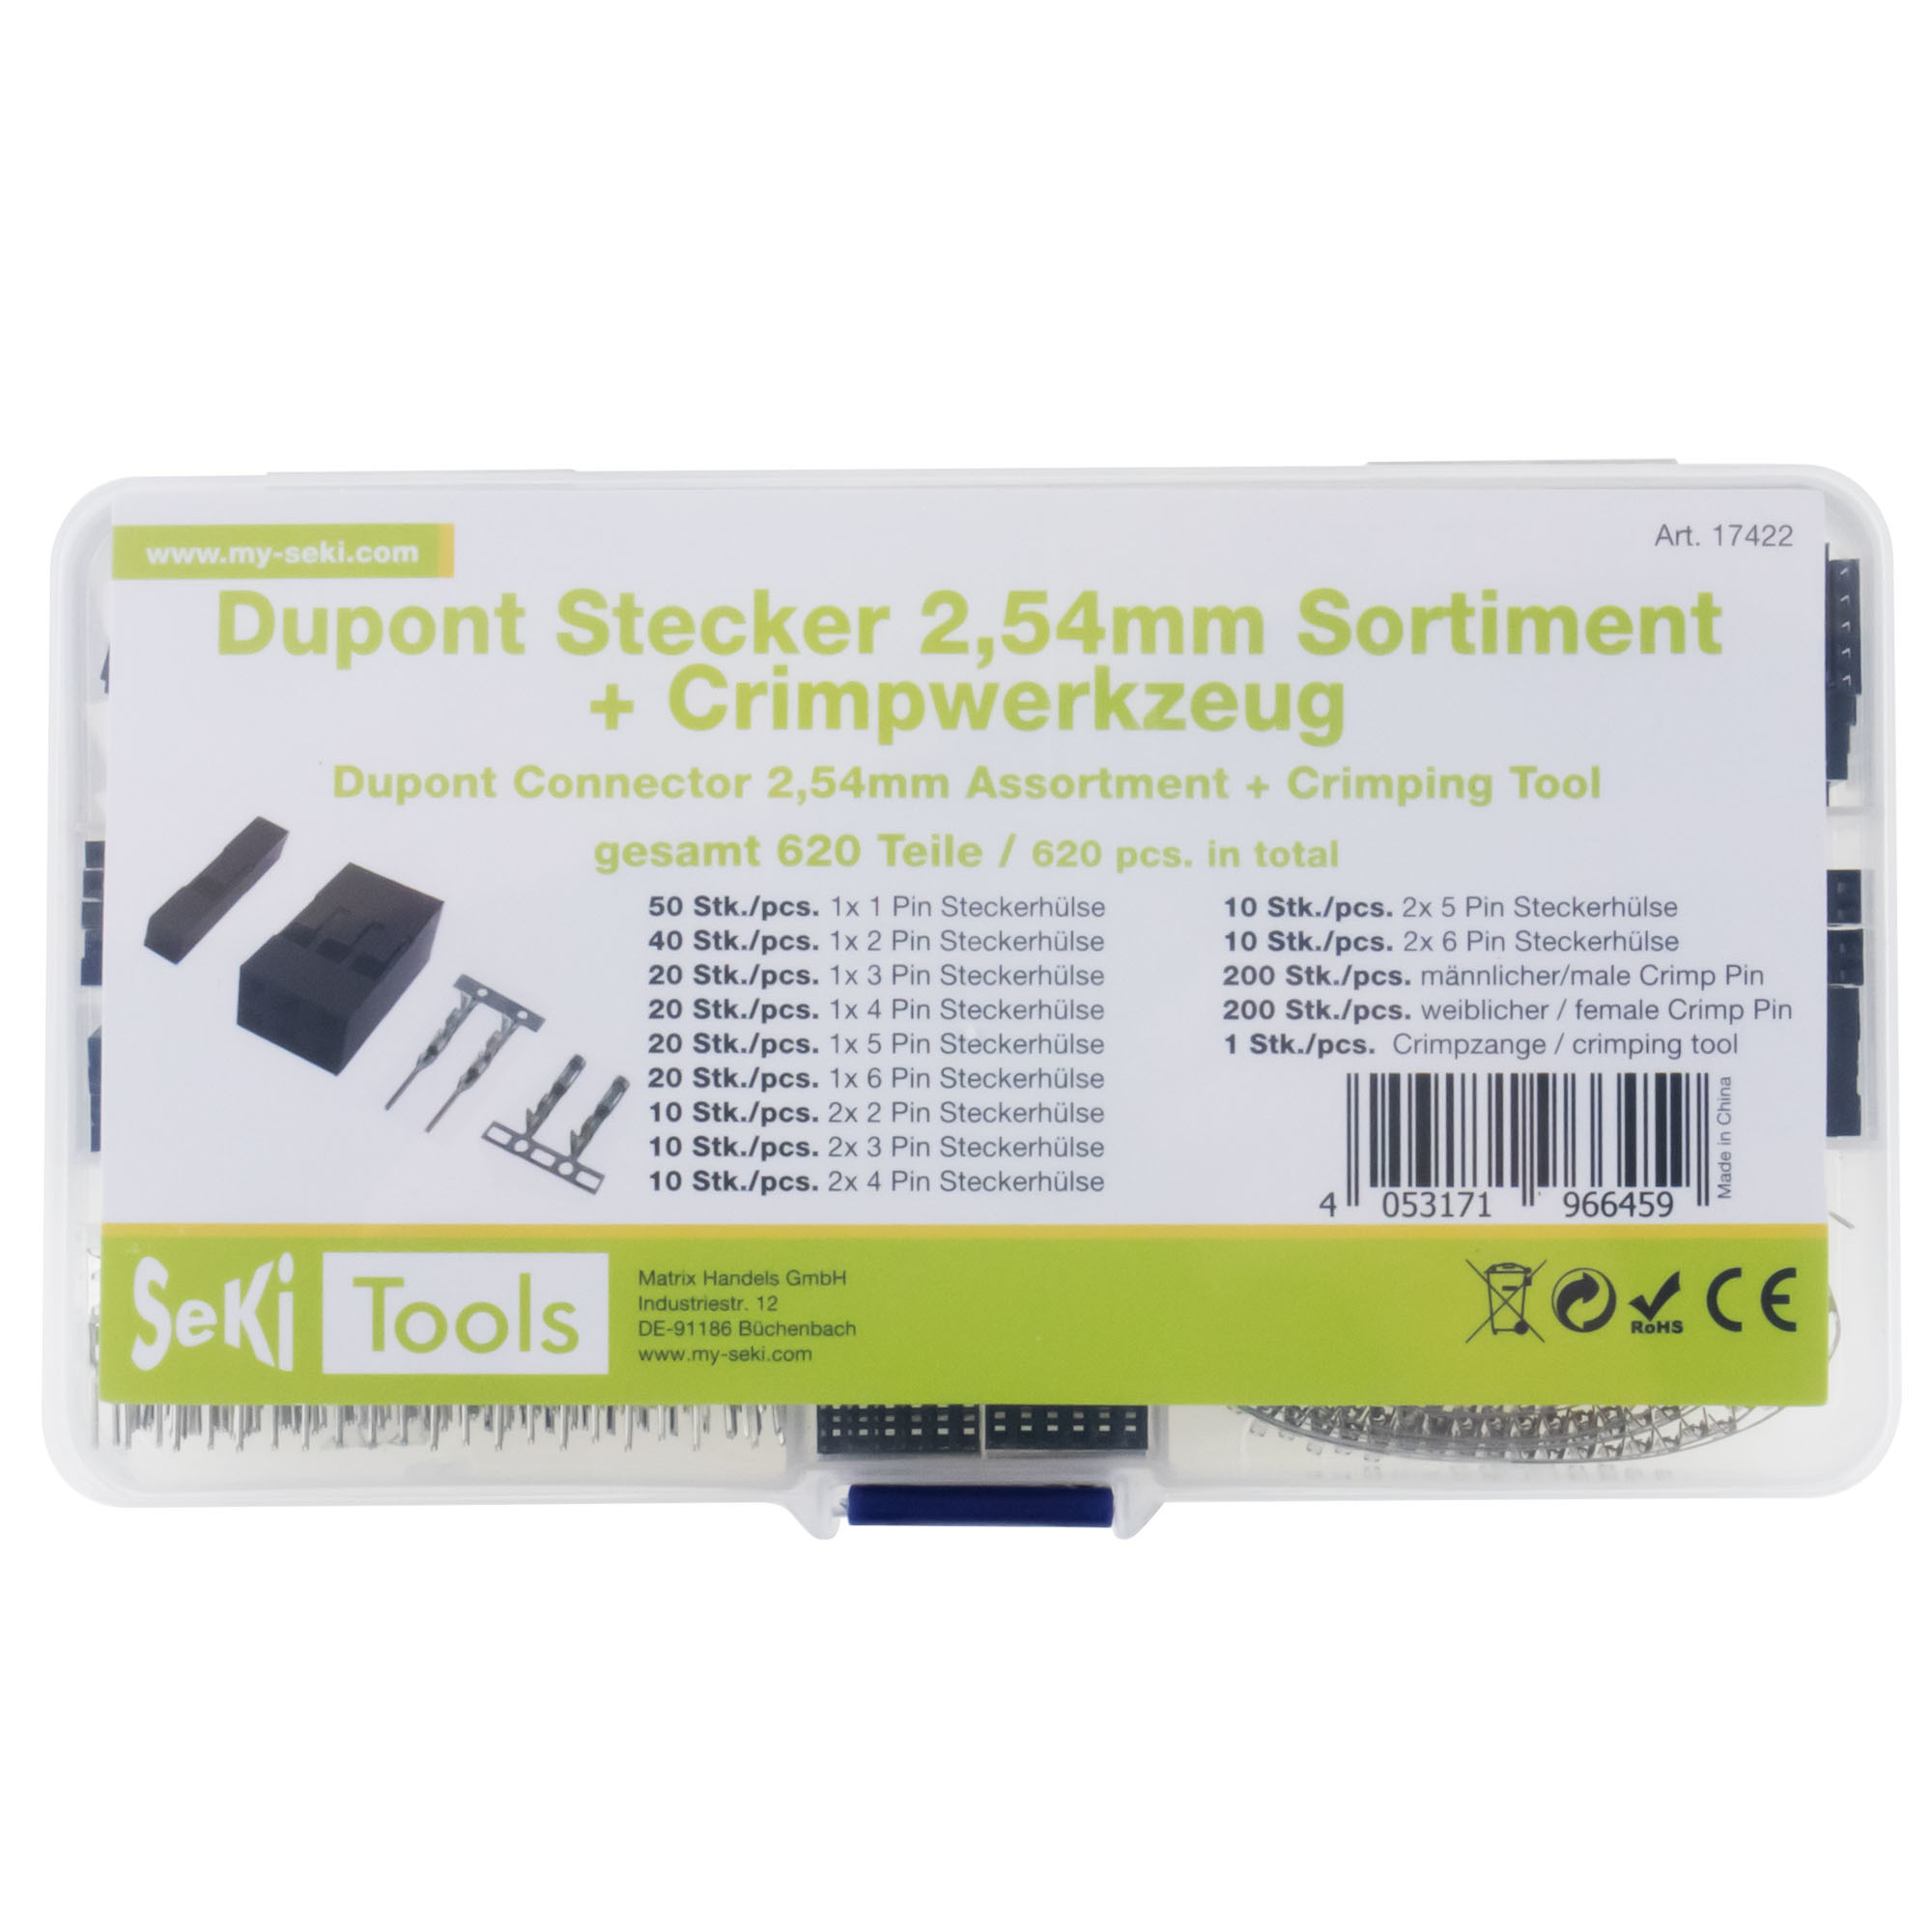 Dupont Connector 2,54mm Assortment + Crimping Tool 620PCS